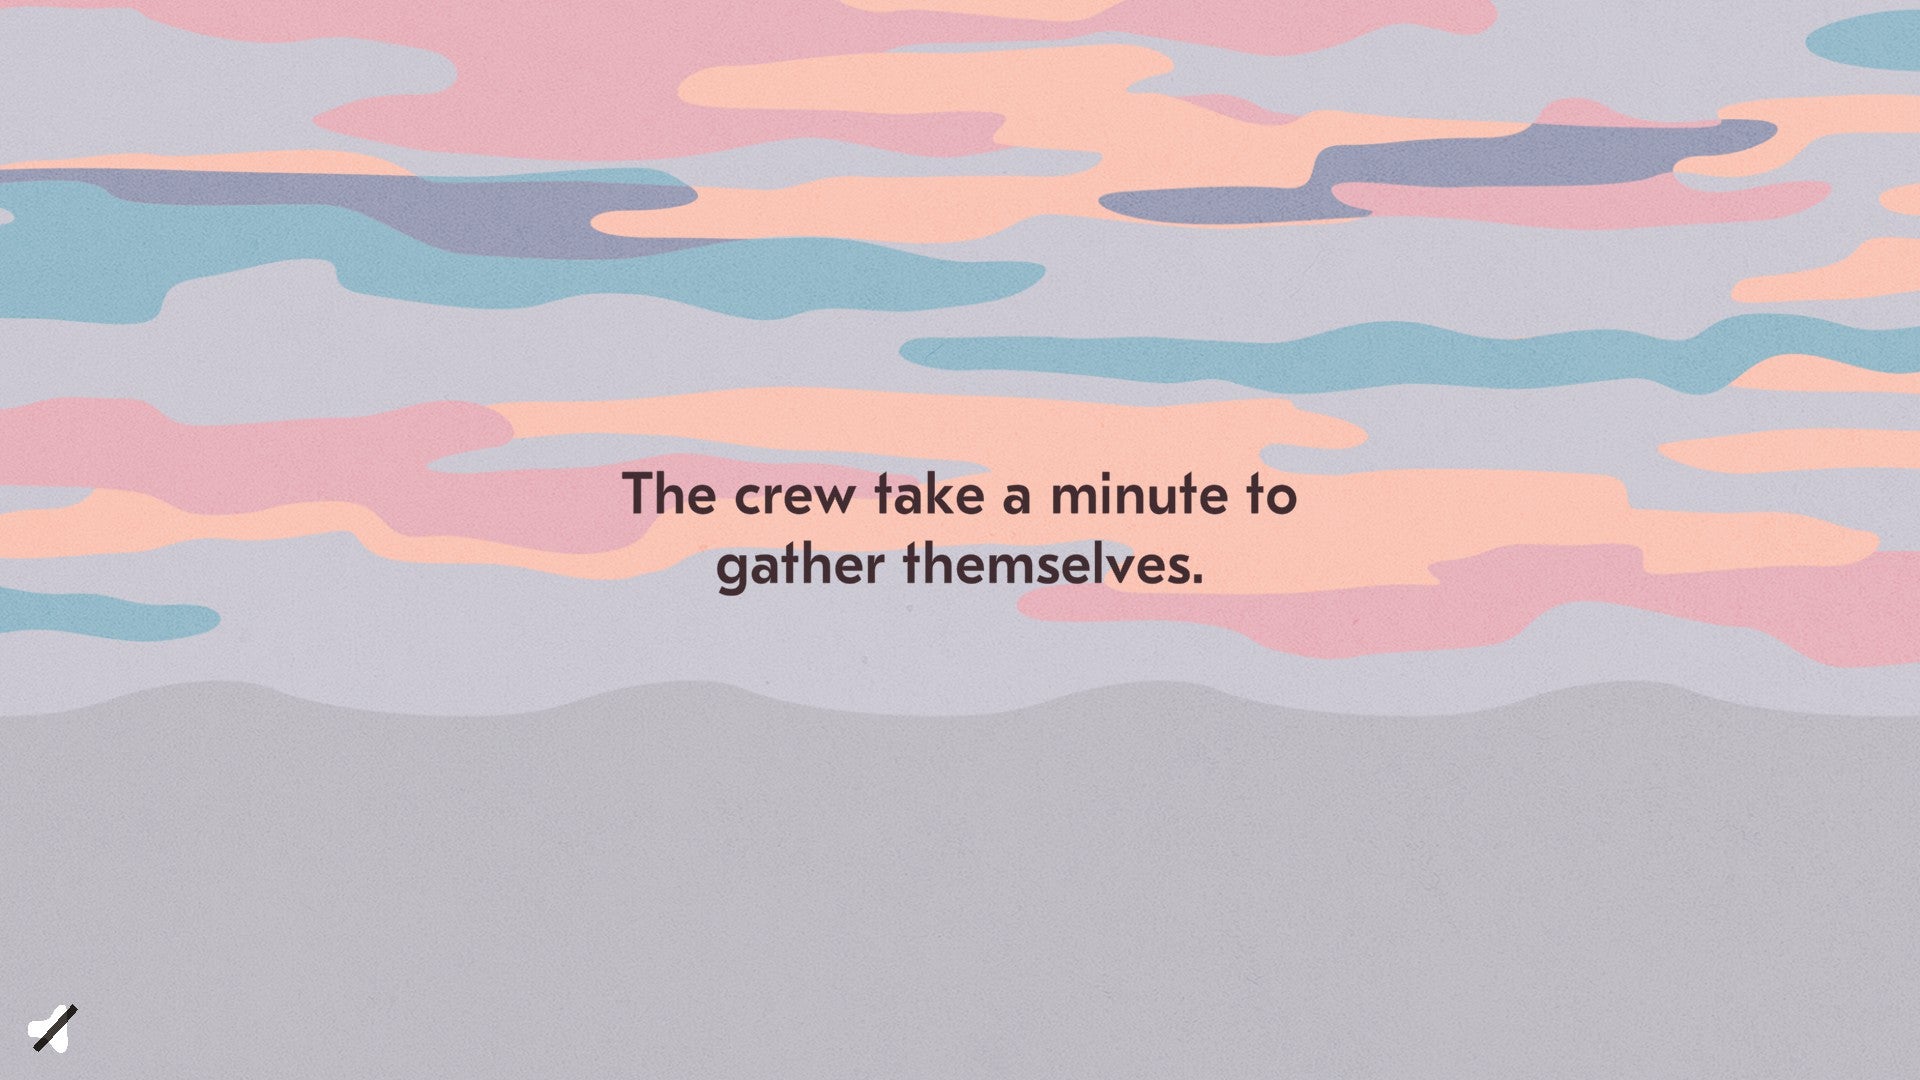 《盐海编年史》的一个标题卡片。在一个变幻的天空下，文字写着：“船员们花一分钟集结。”